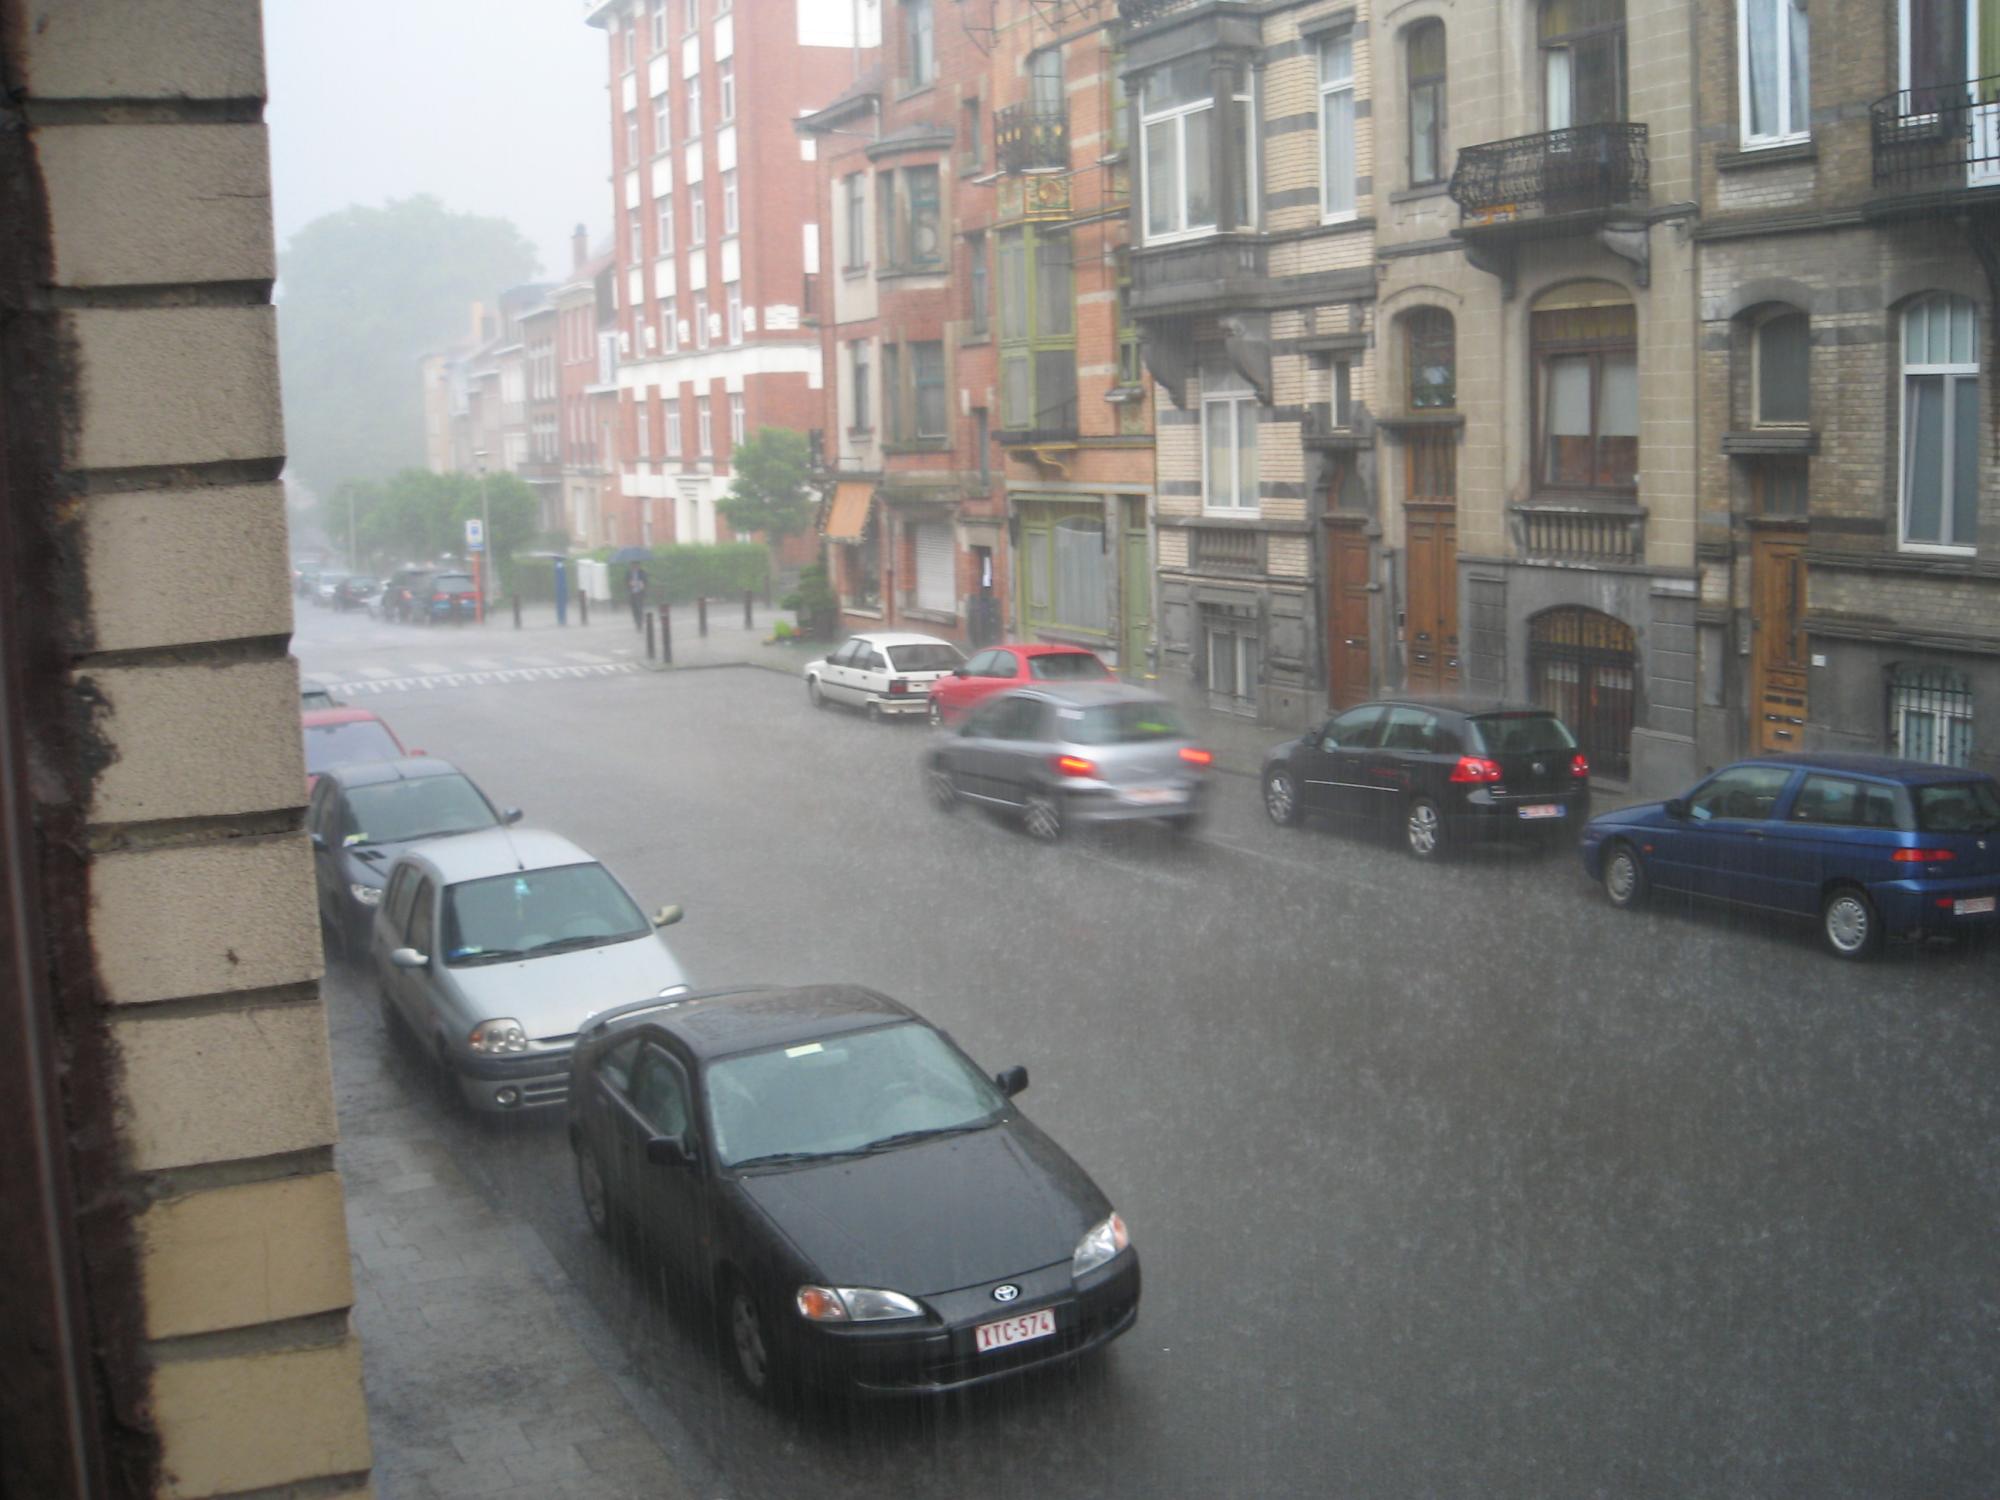 Brussels (2008-2009) - Brussels Heavy Rain #2